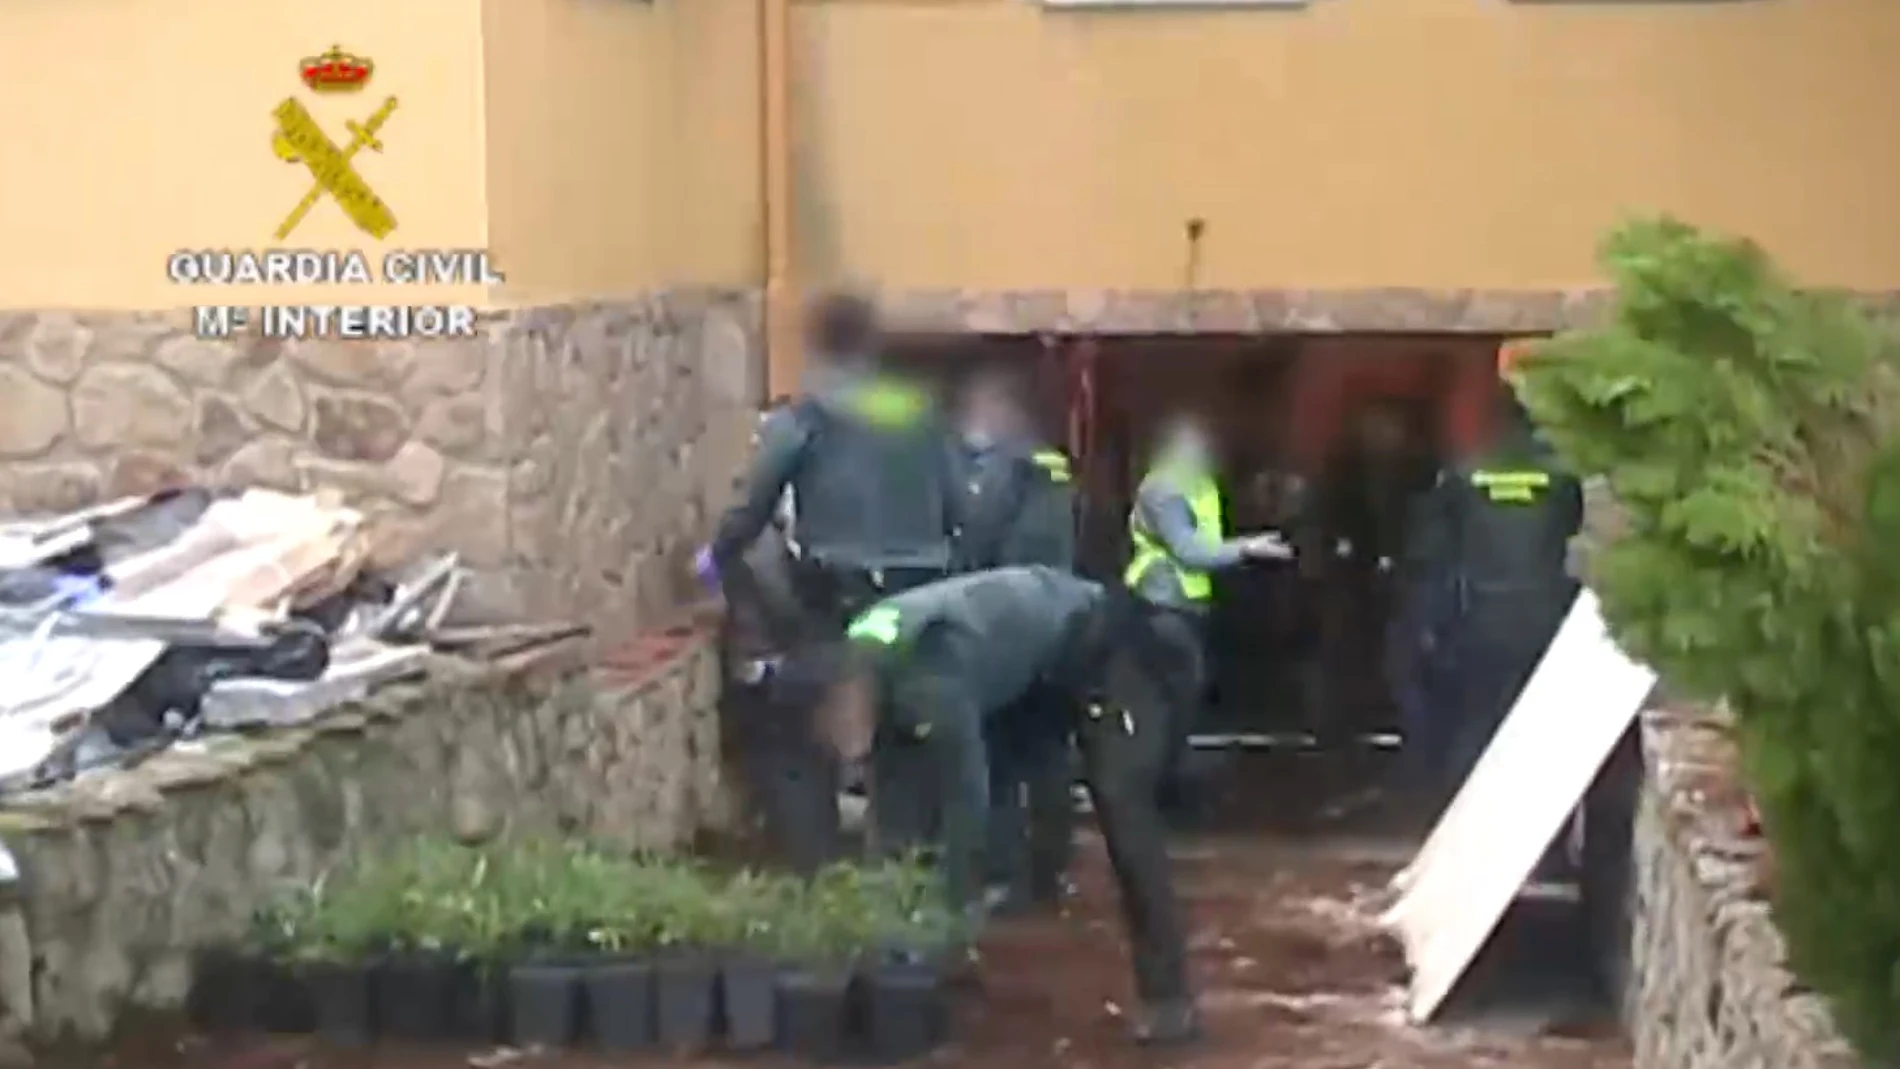 Dos detenidos y desmantelado un cultivo ilegal de marihuana en un chalé de Villaviciosa de Odón